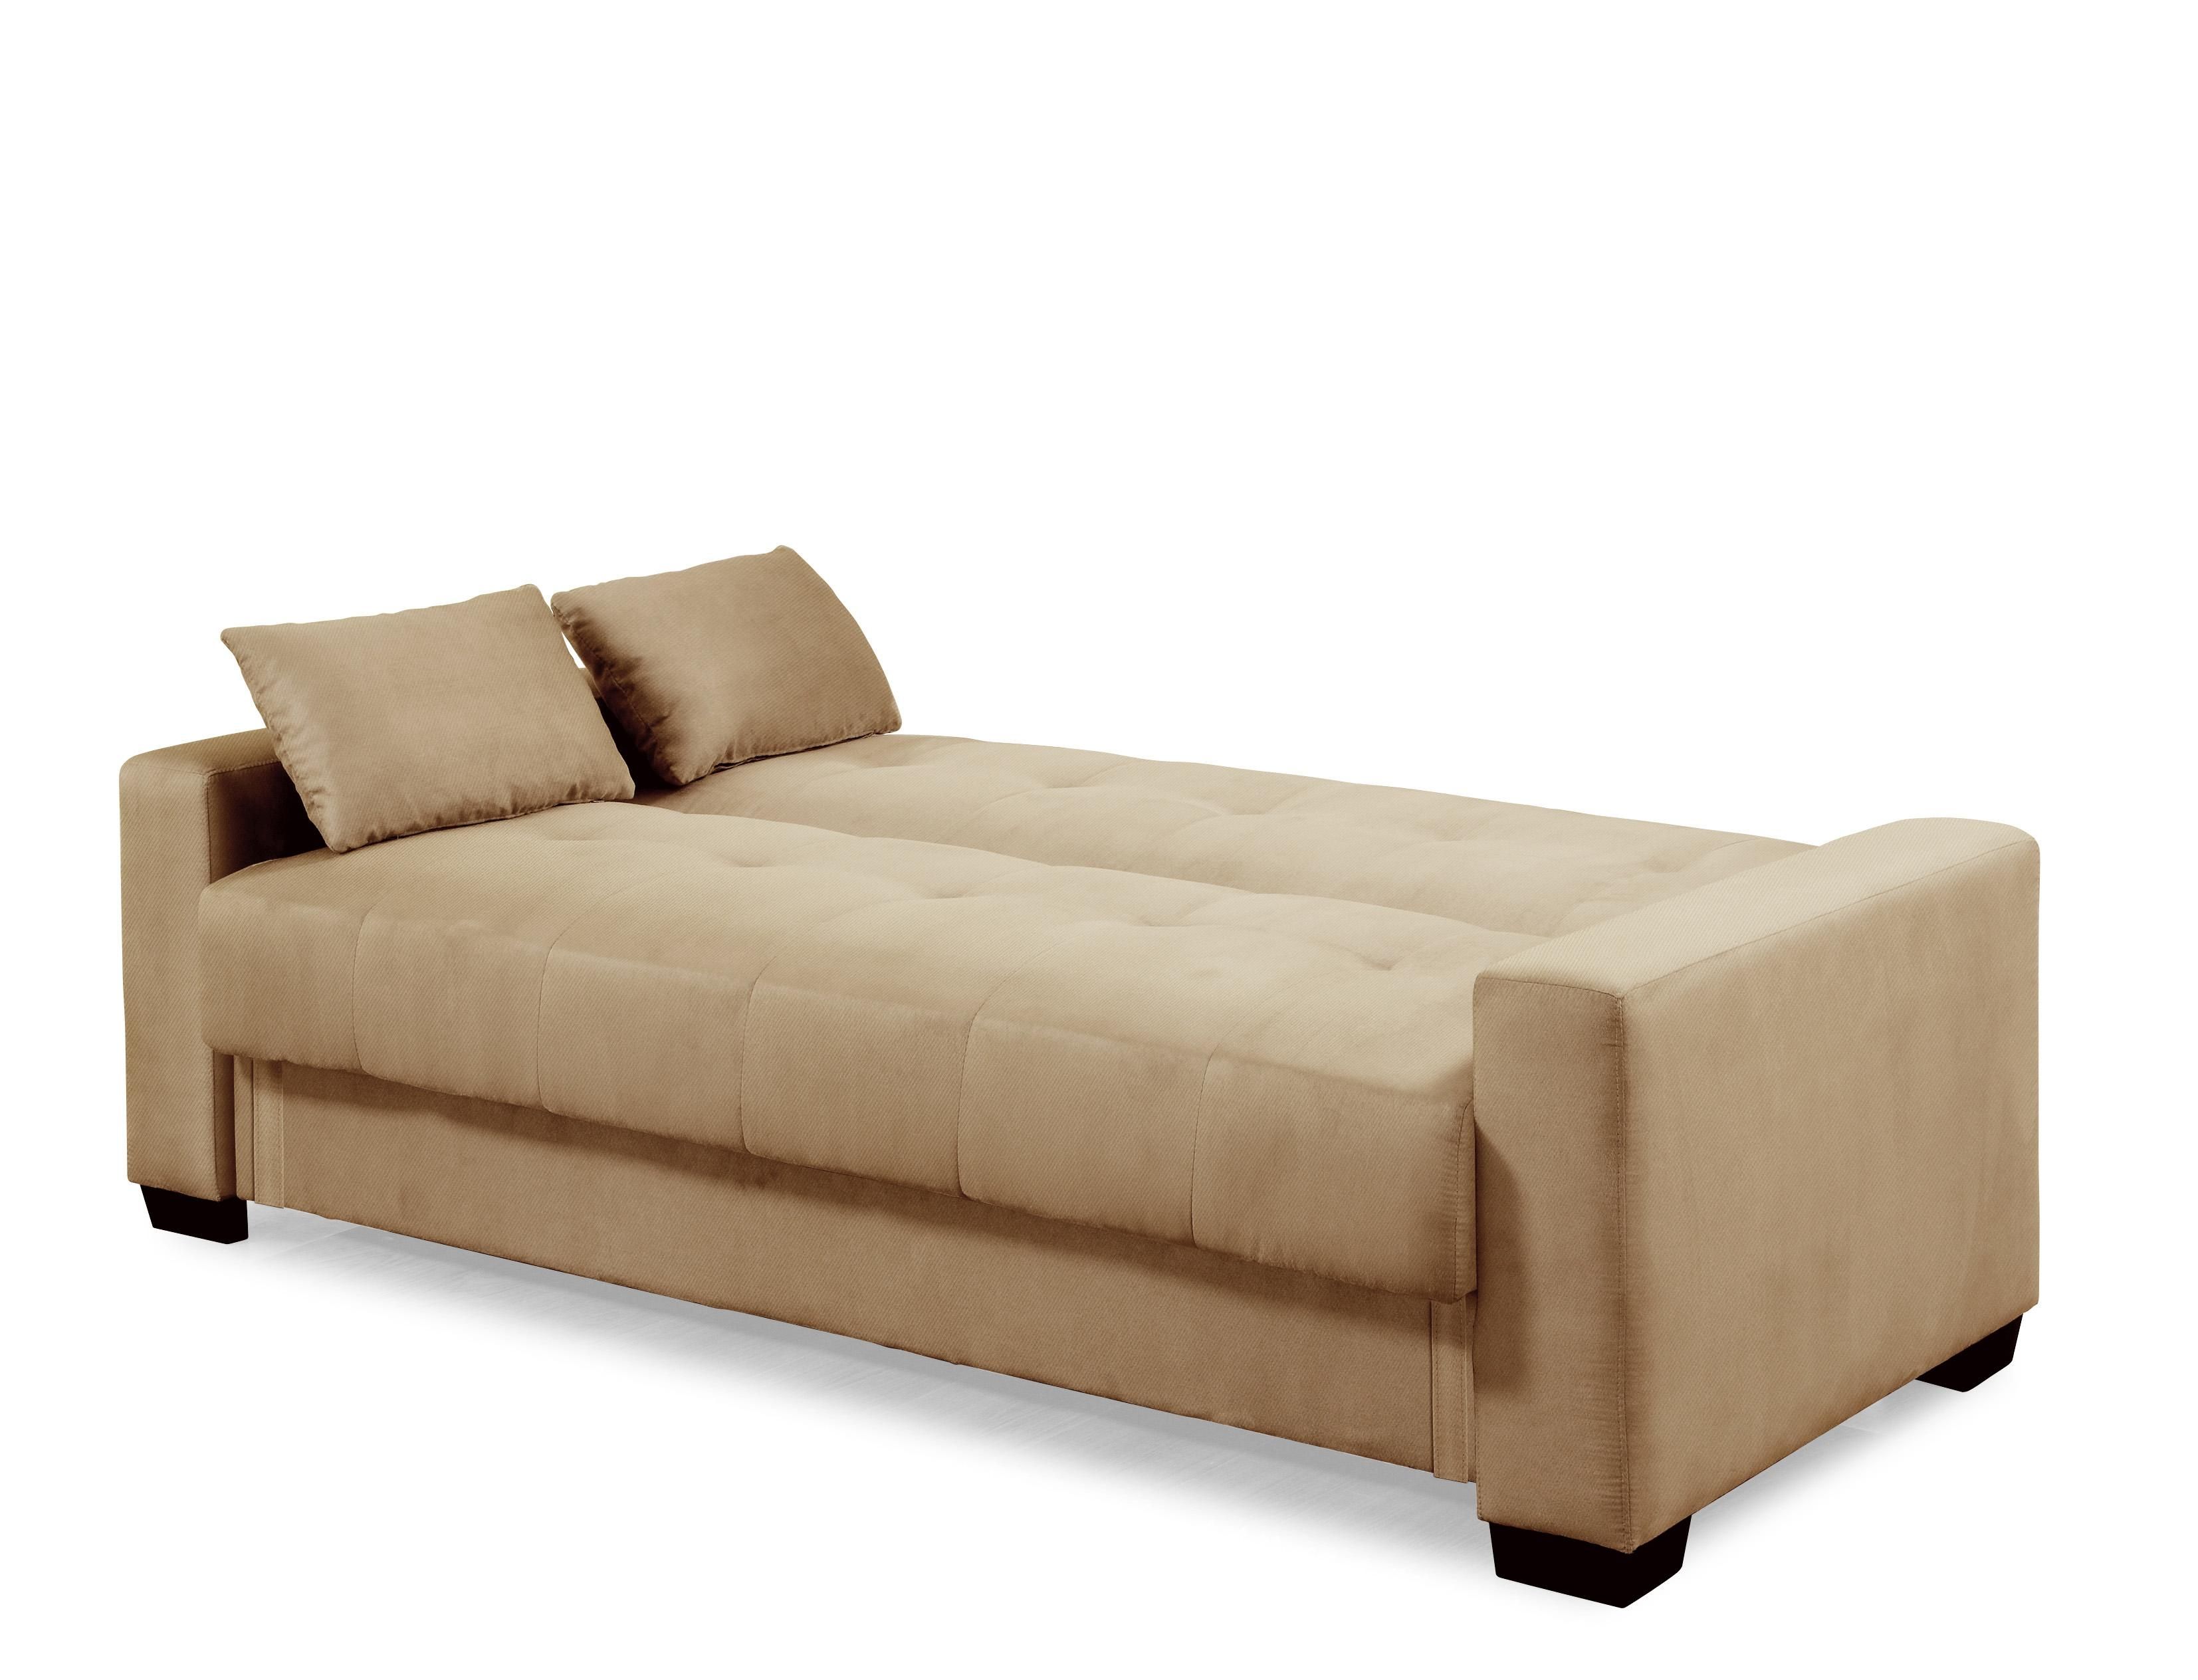 Sofas Center : Convertible Sofa Bunk Beds With Storage Cheap Queen Regarding Convertible Queen Sofas (View 12 of 20)